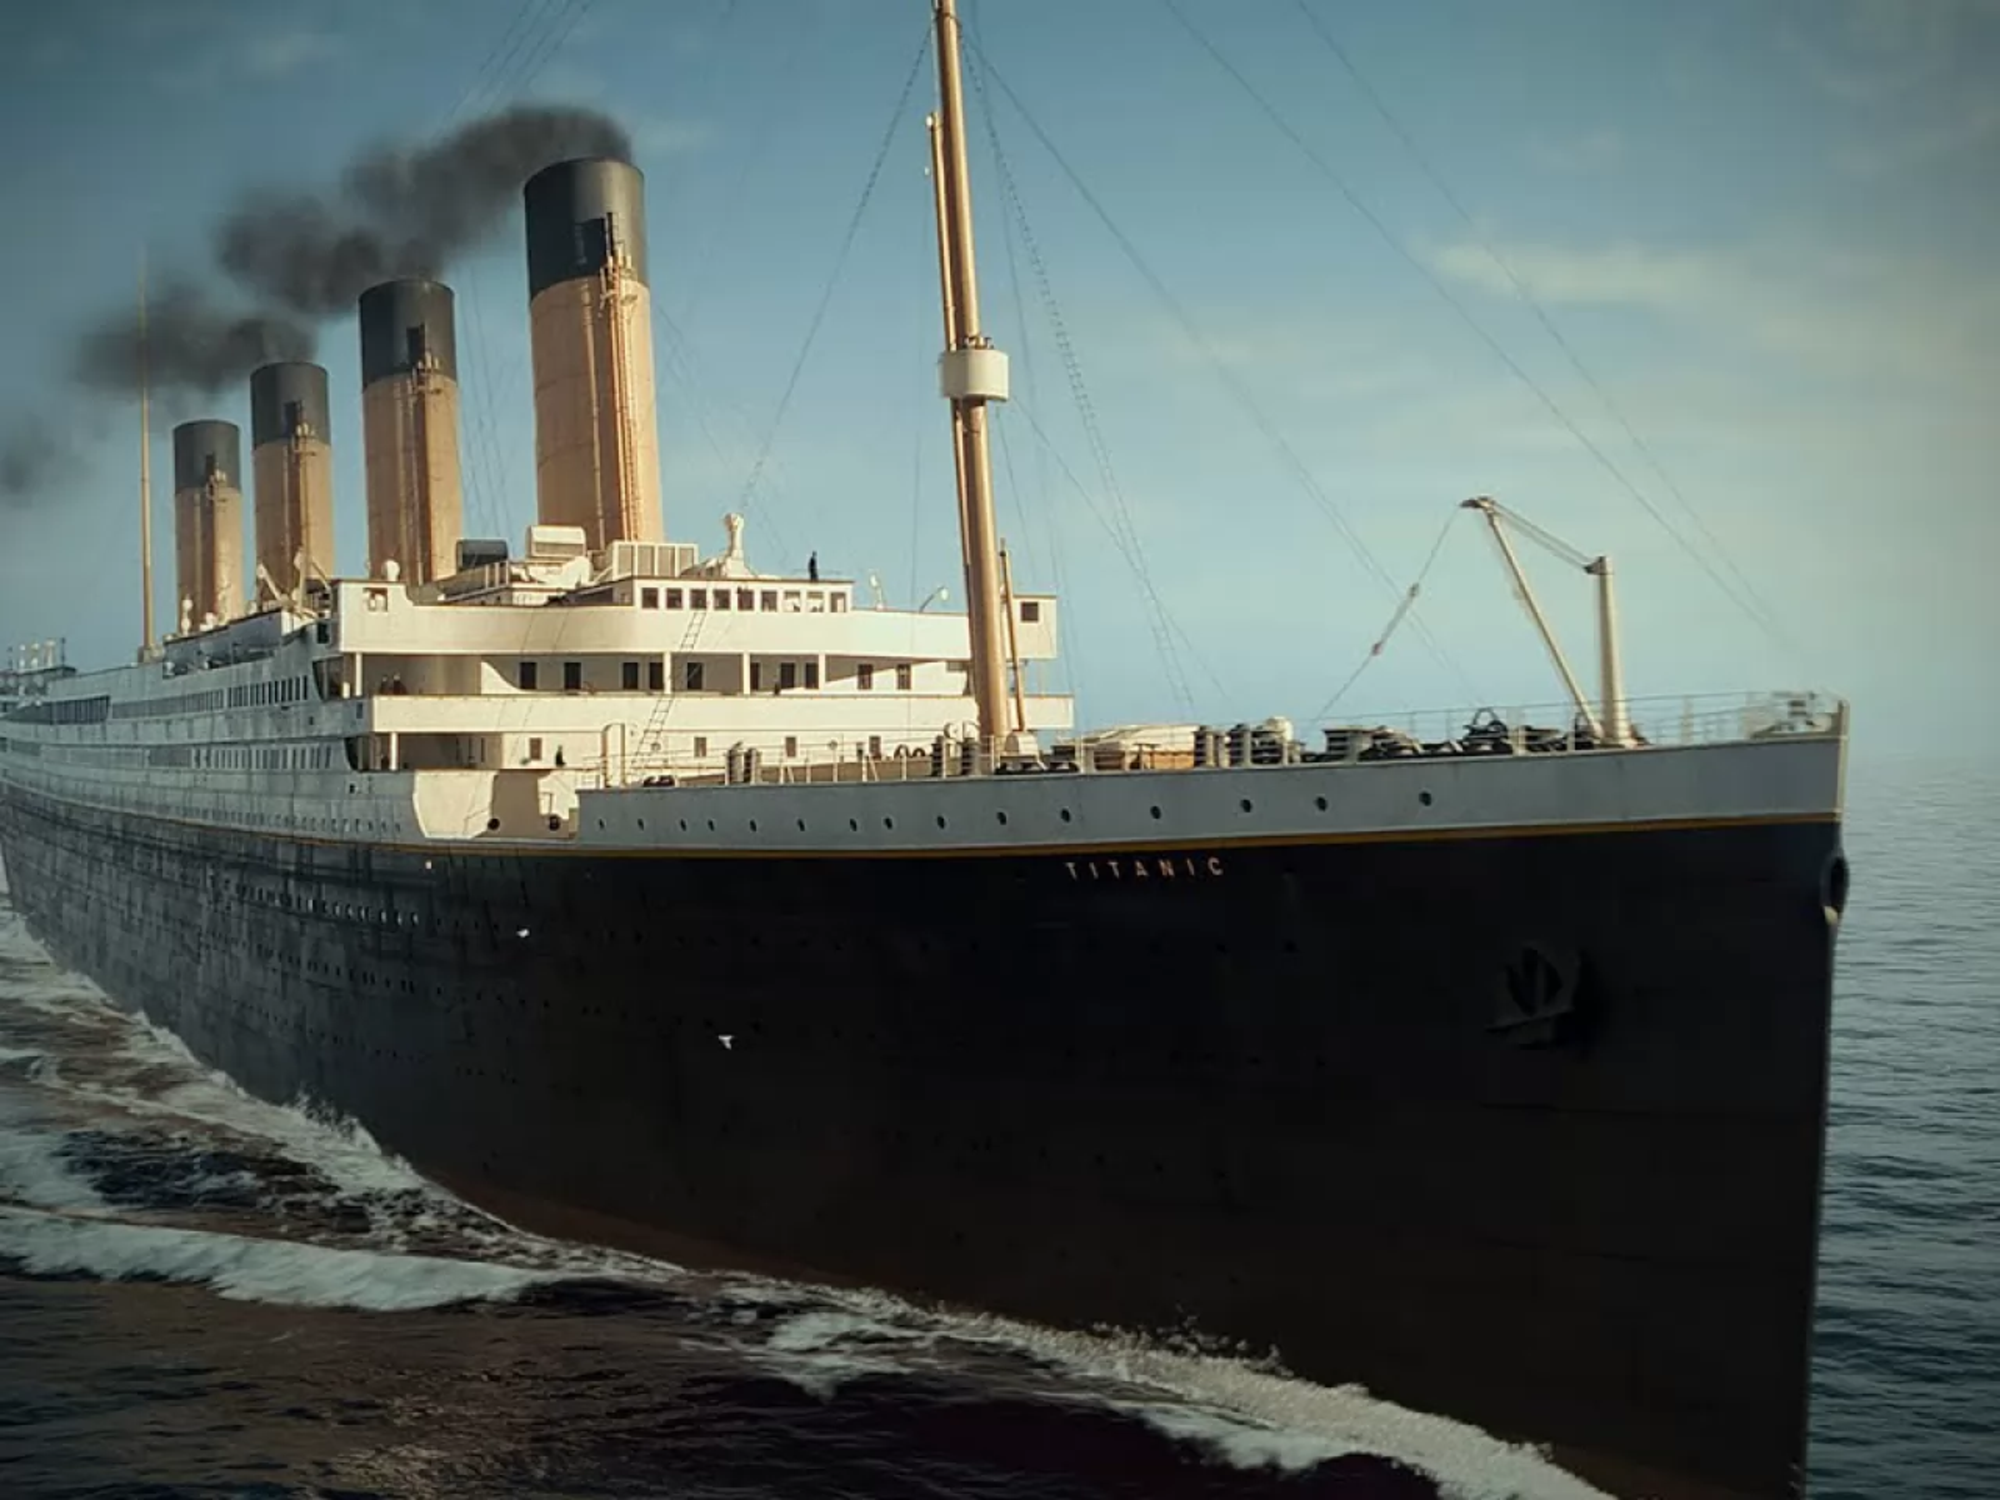 Maledizione Titanic si abbatte su batiscafo con 5 turisti a bordo -  Travelnostop